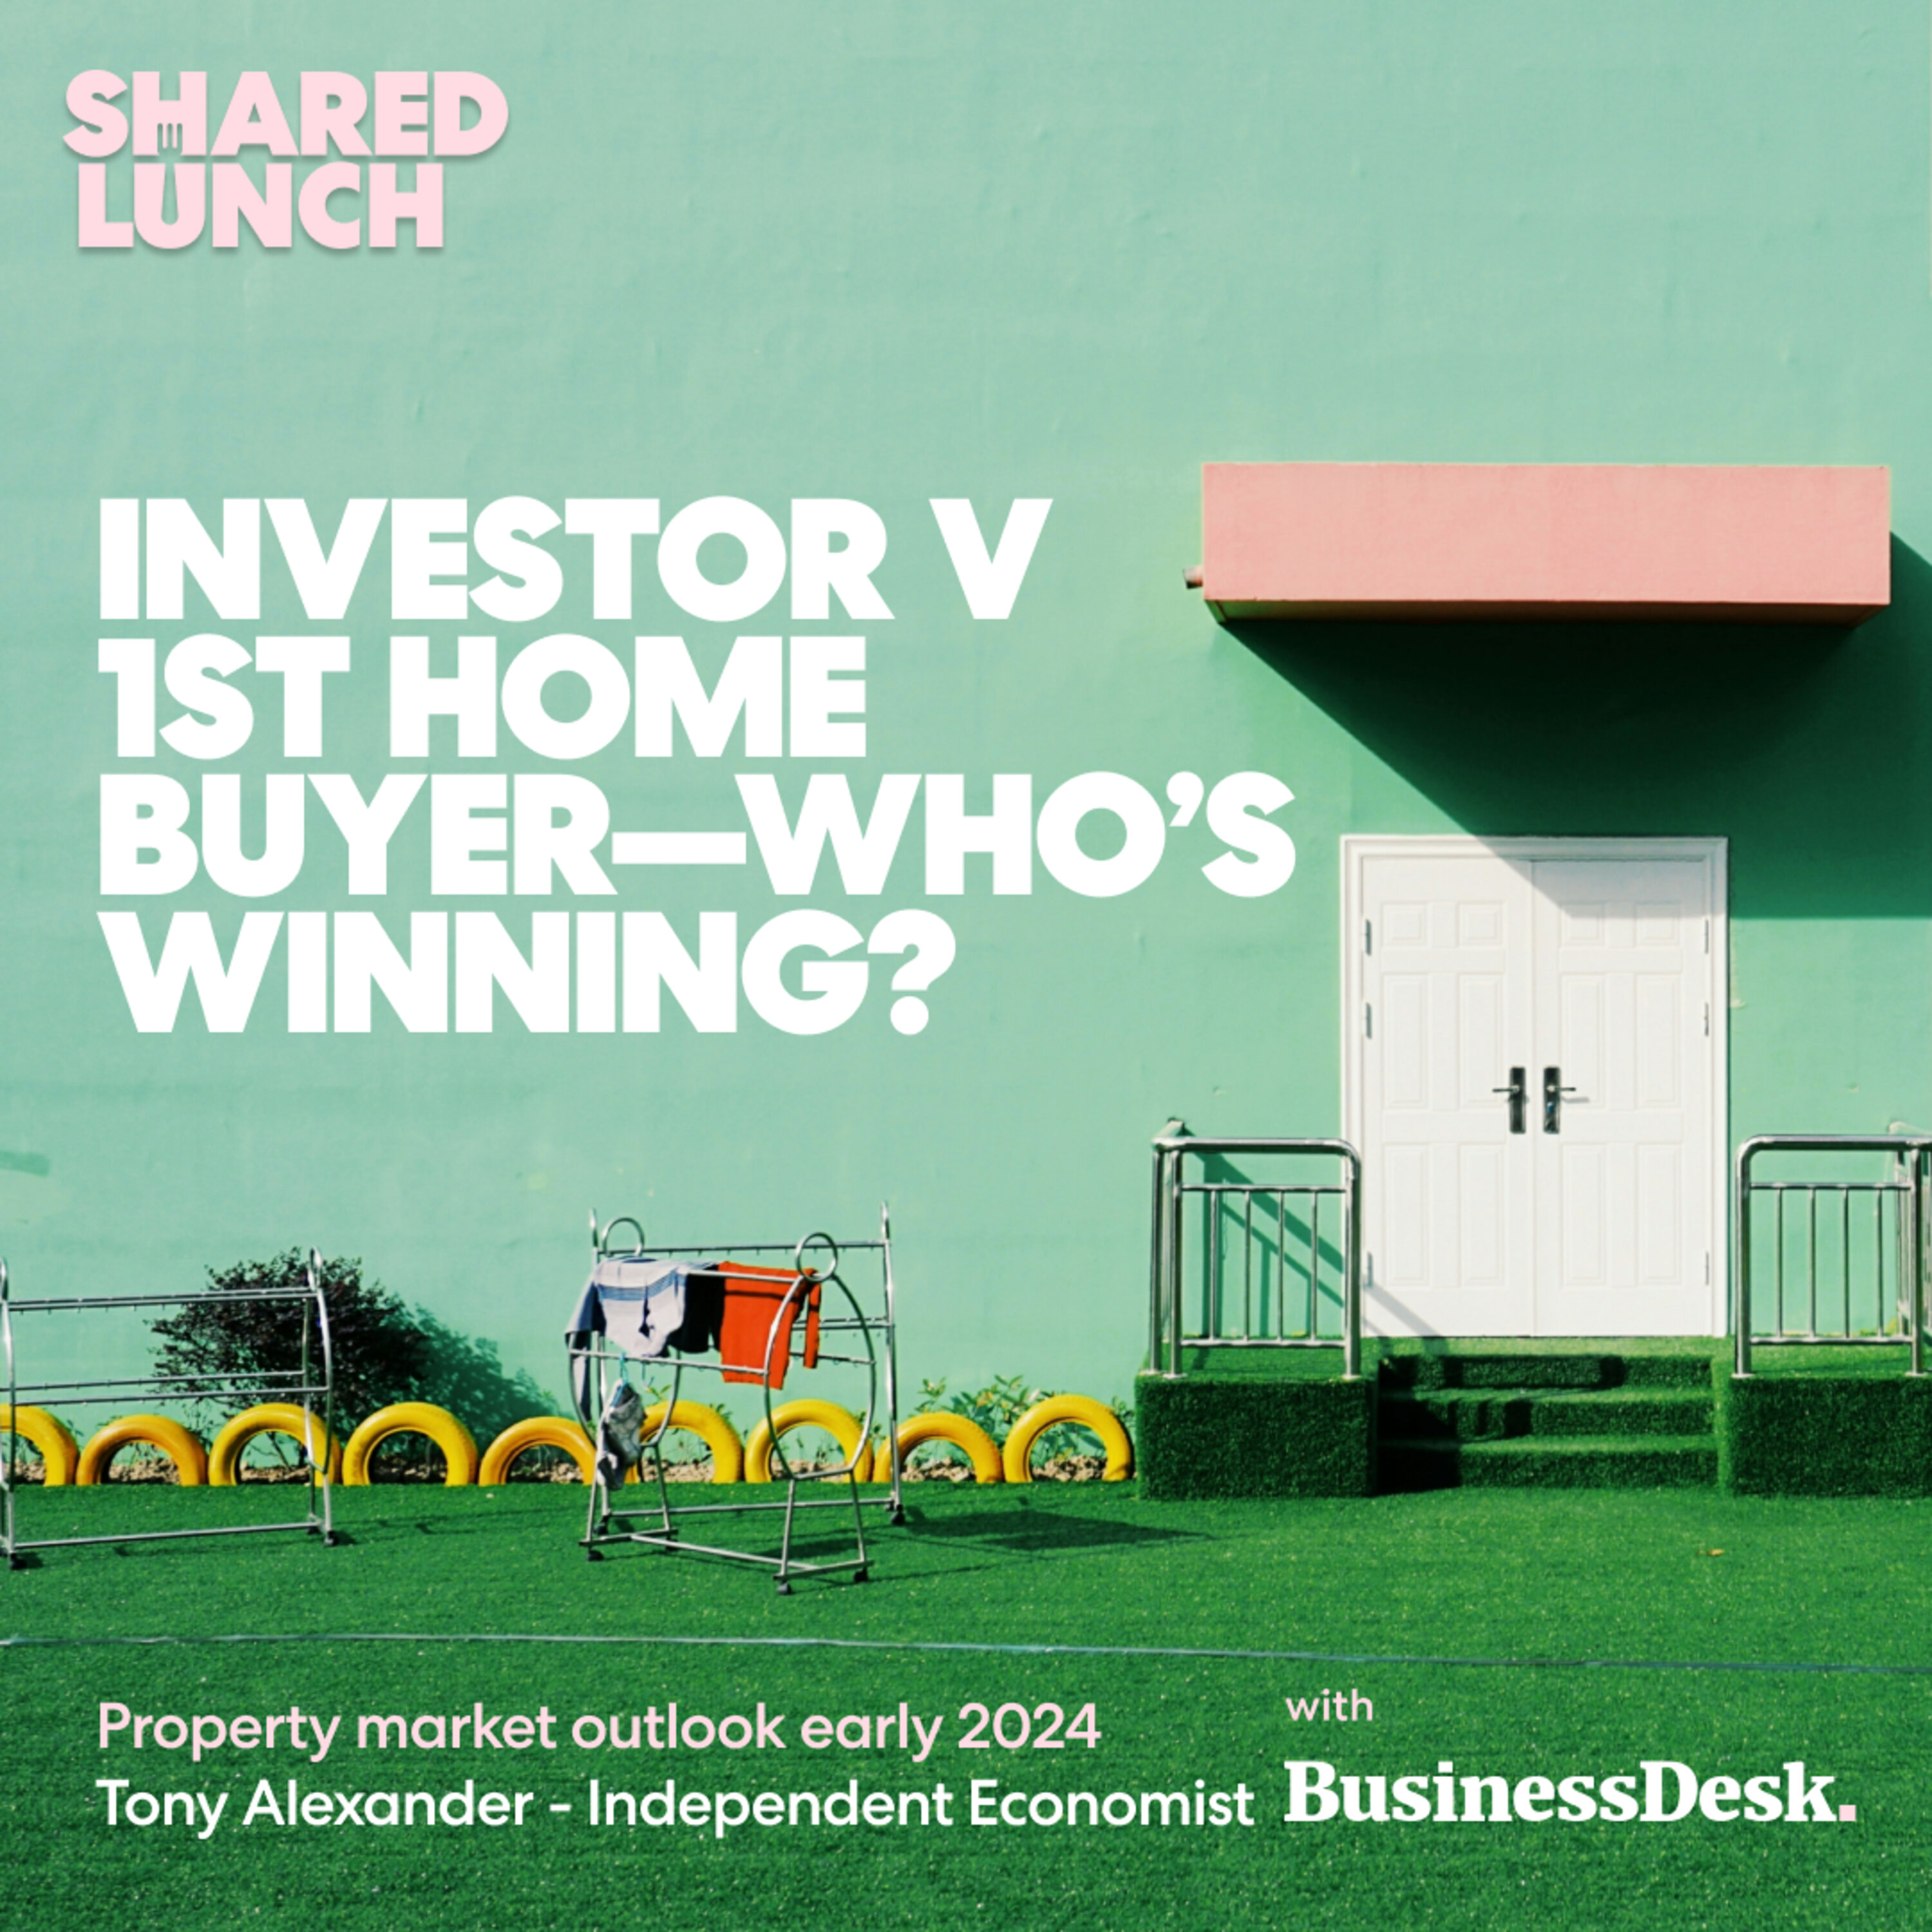 Investor v 1st home buyer—who’s winning?